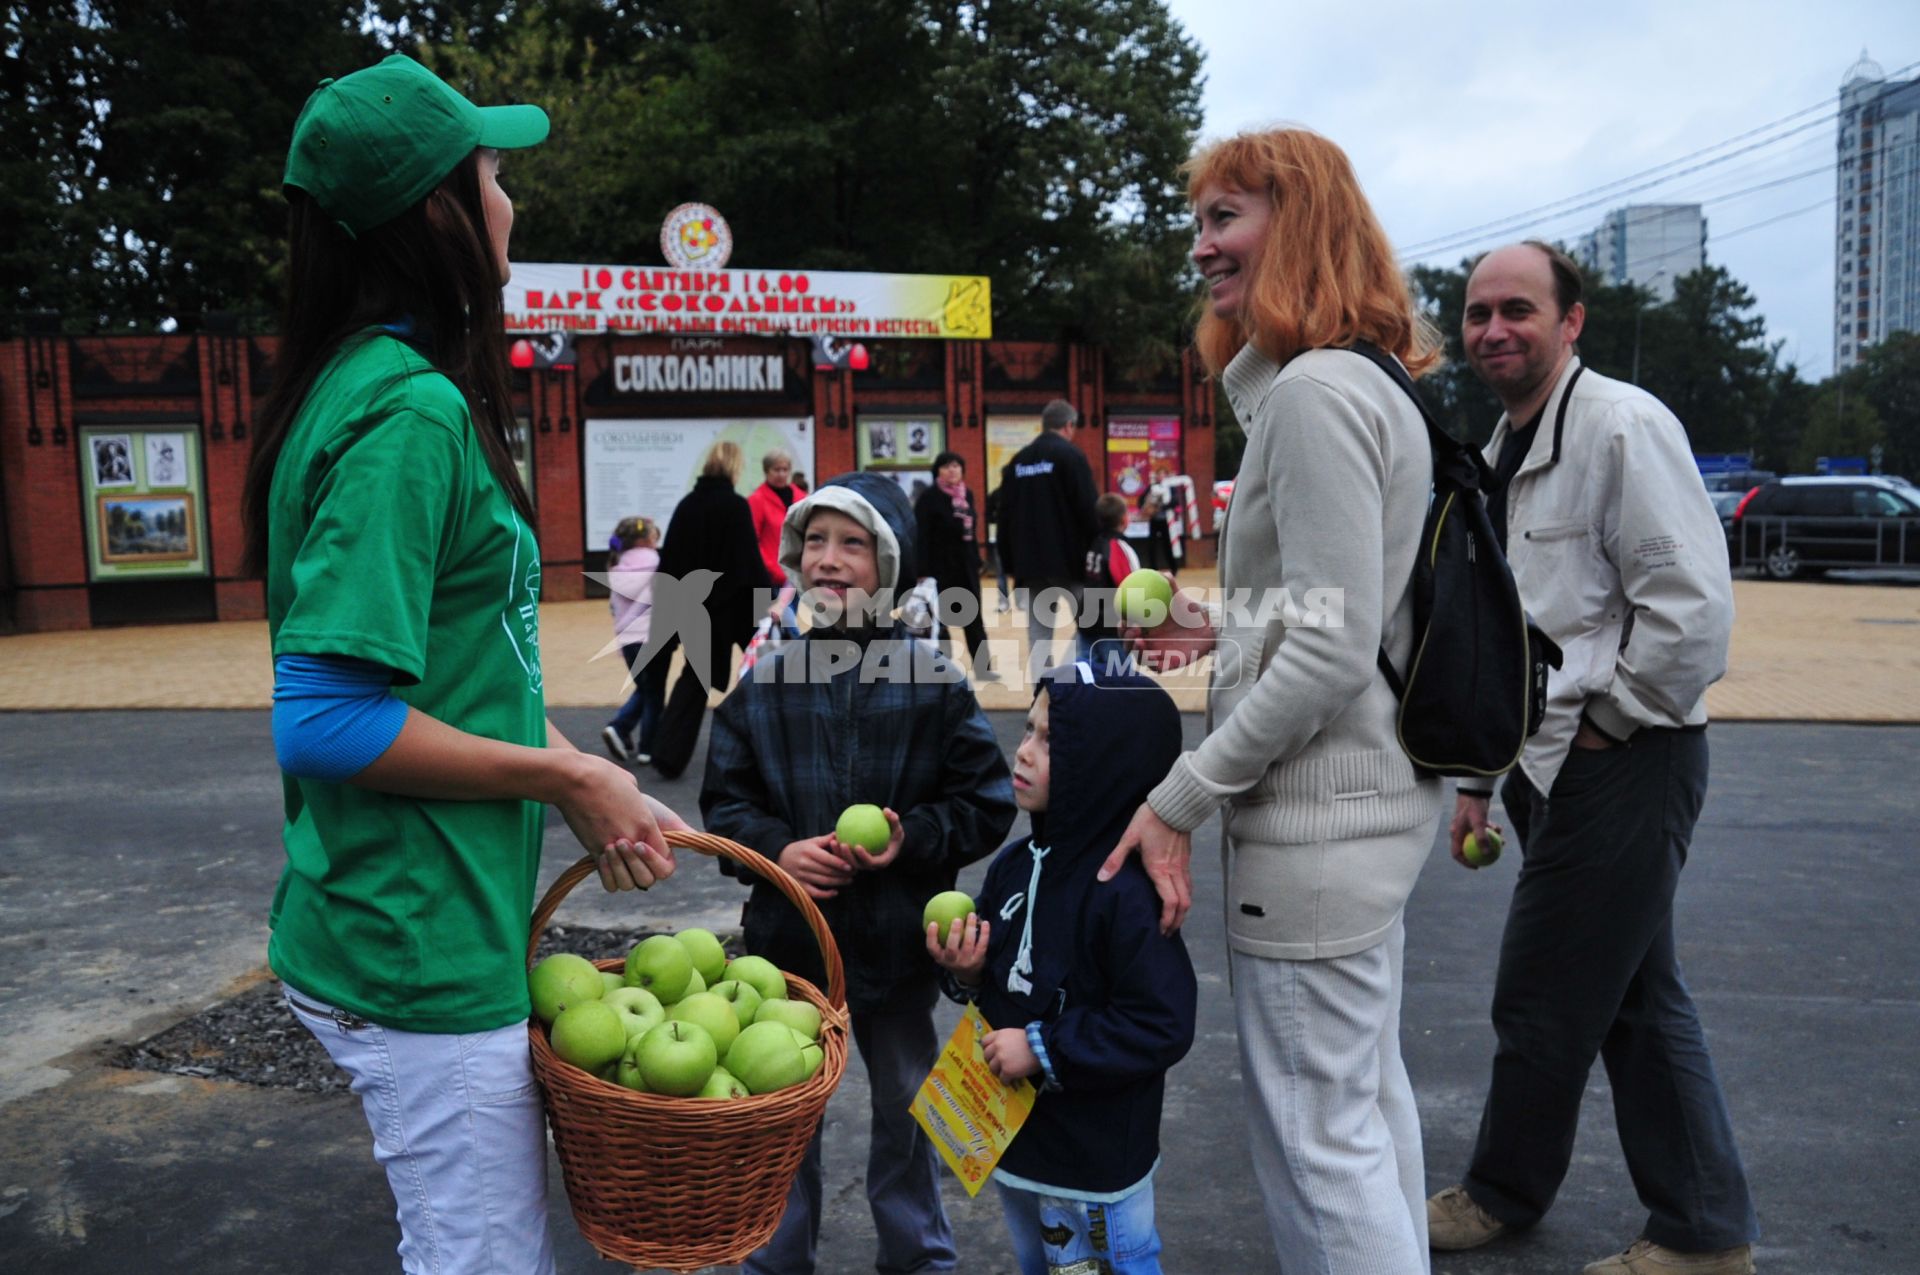 Фестиваль яблок МЫ ВАС ЛЮБИМ! ВАШ ПАРК СОКОЛЬНИКИ. На снимке: девушка предлагает прохожим яблоки. 10 сентября 2011 года.